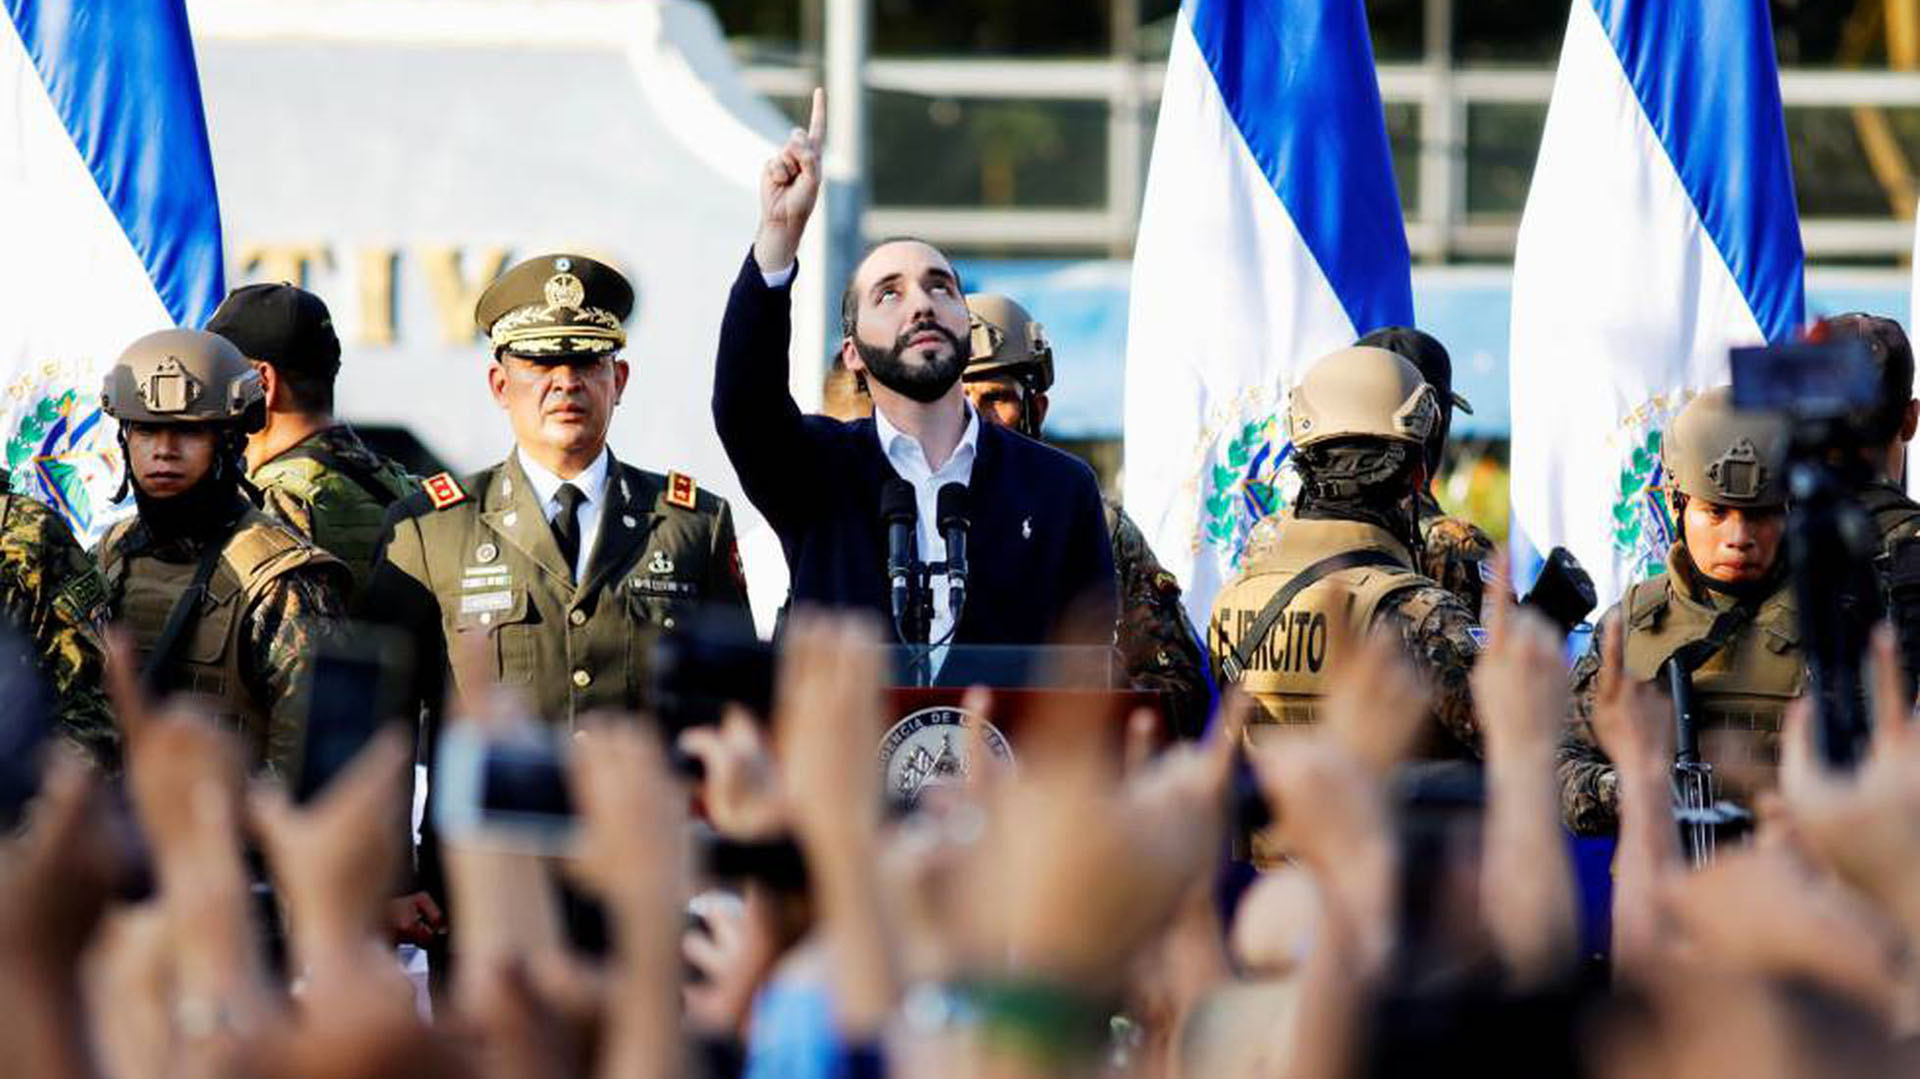 El presidente salvadoreño Nayib Bukele ha dado un protagonismo importante al ejército salvadoreño, uno de los protagonistas del conflicto interno que vivió el país en la década de los 80.
(Reuters)